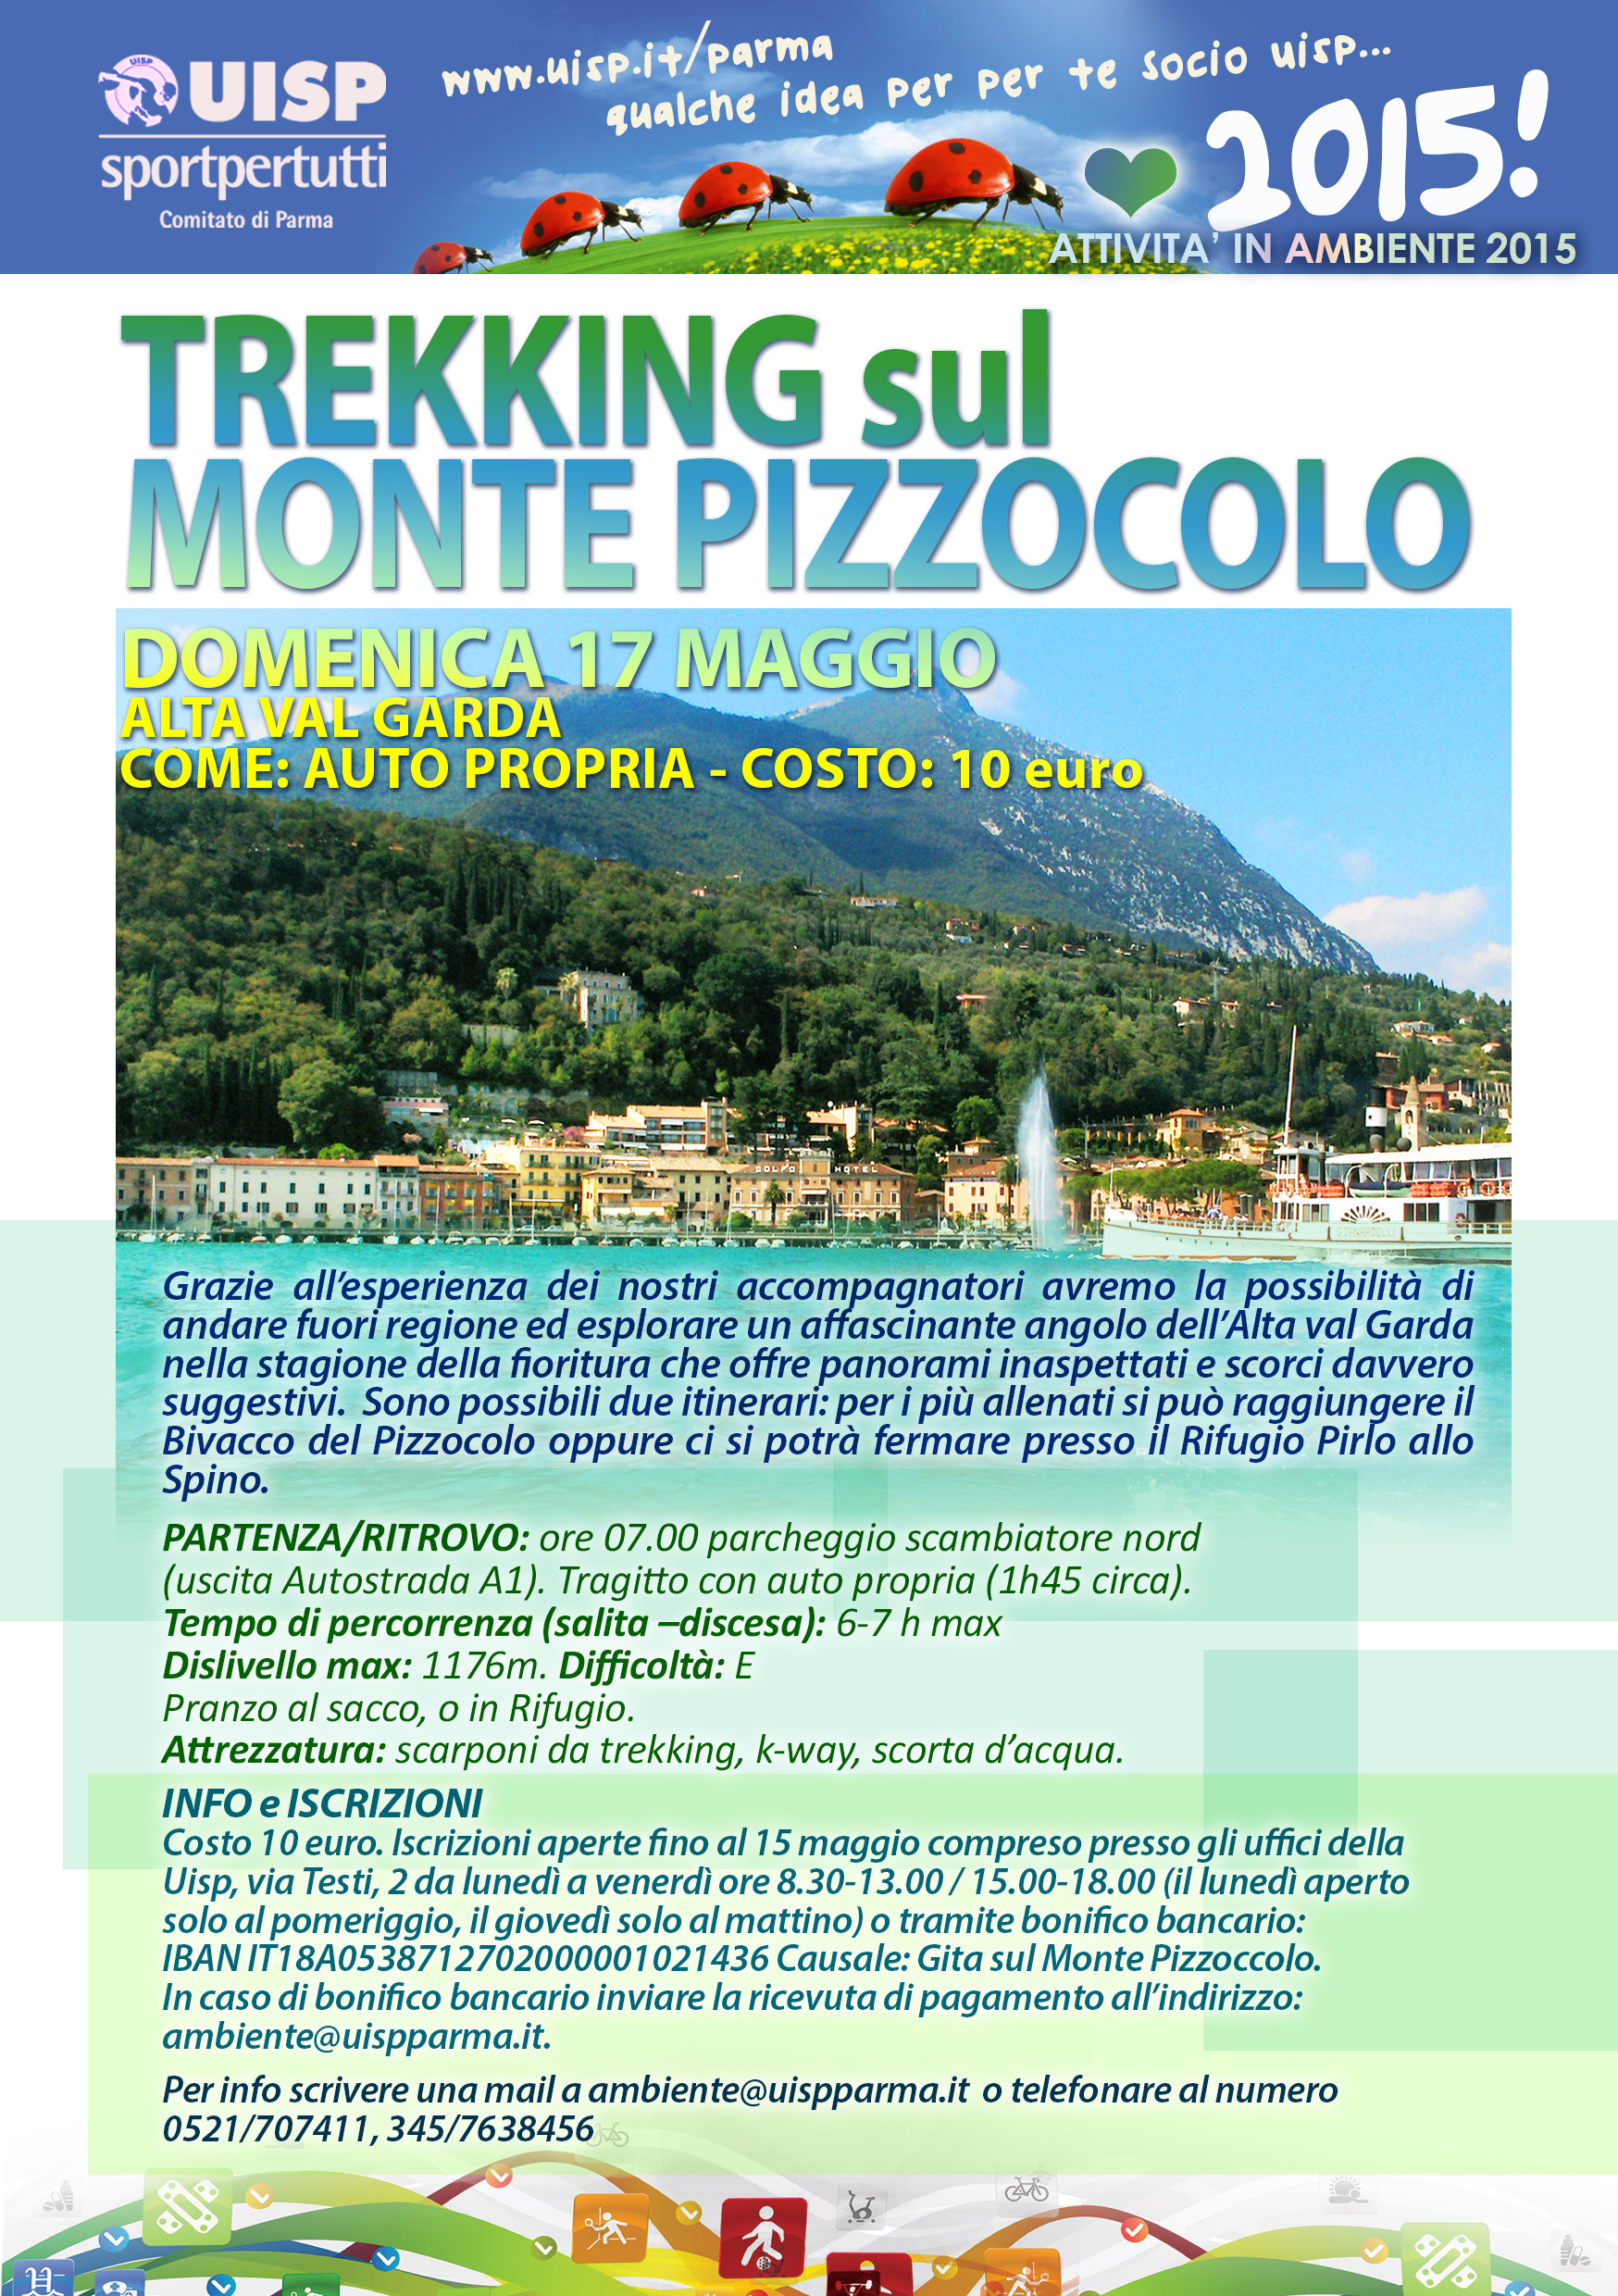 Attività in Ambiente 2015 Trekking sul Monte Pizzocolo 17 Maggio